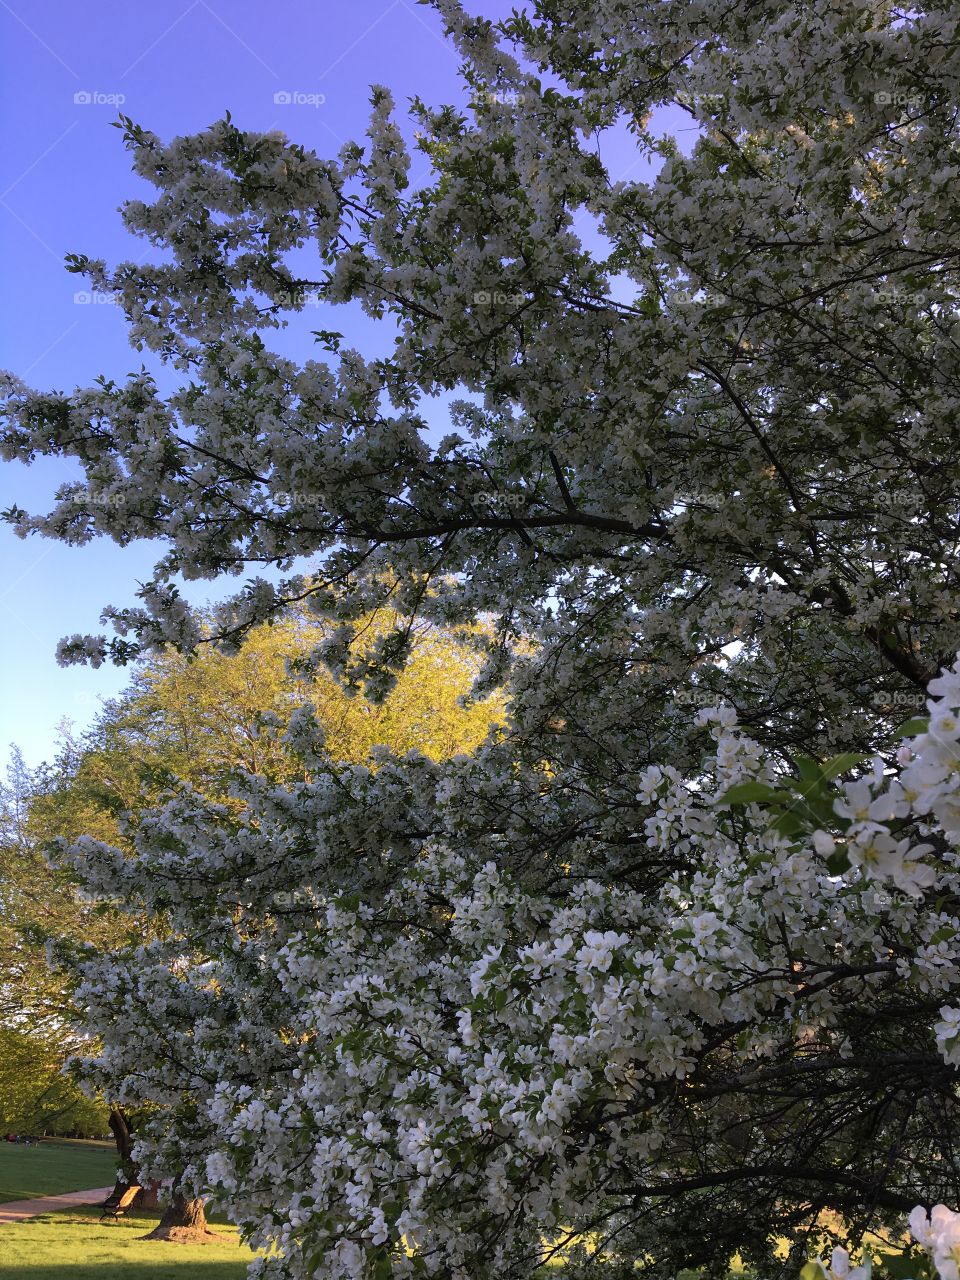 Spring blooms